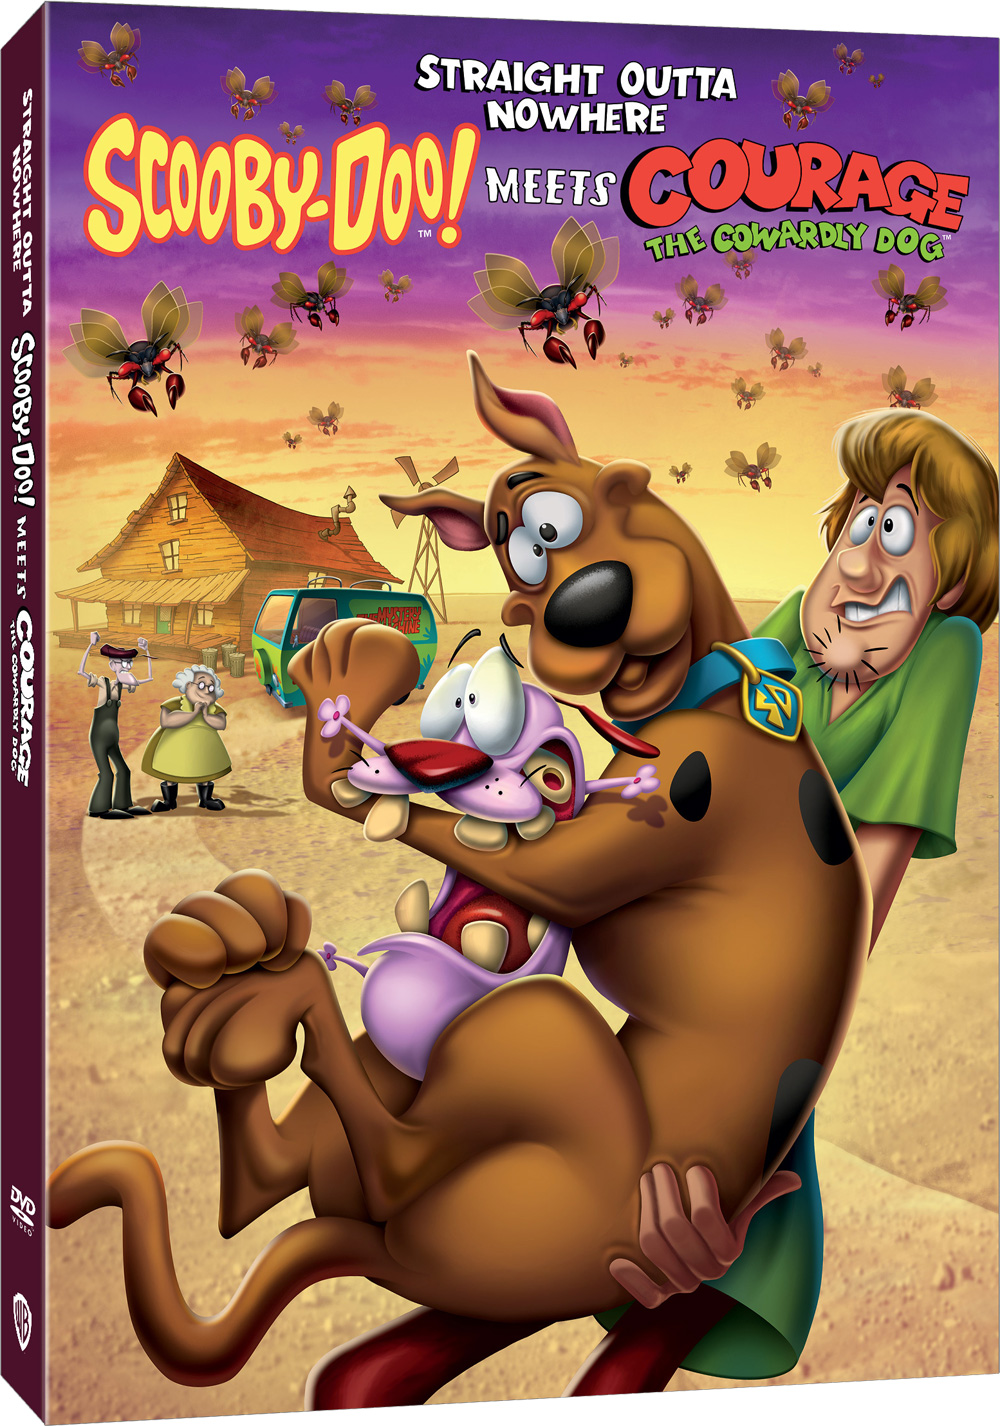 Straight Outta Nowhere: Scooby-Doo incontra il coraggio del cane codardo